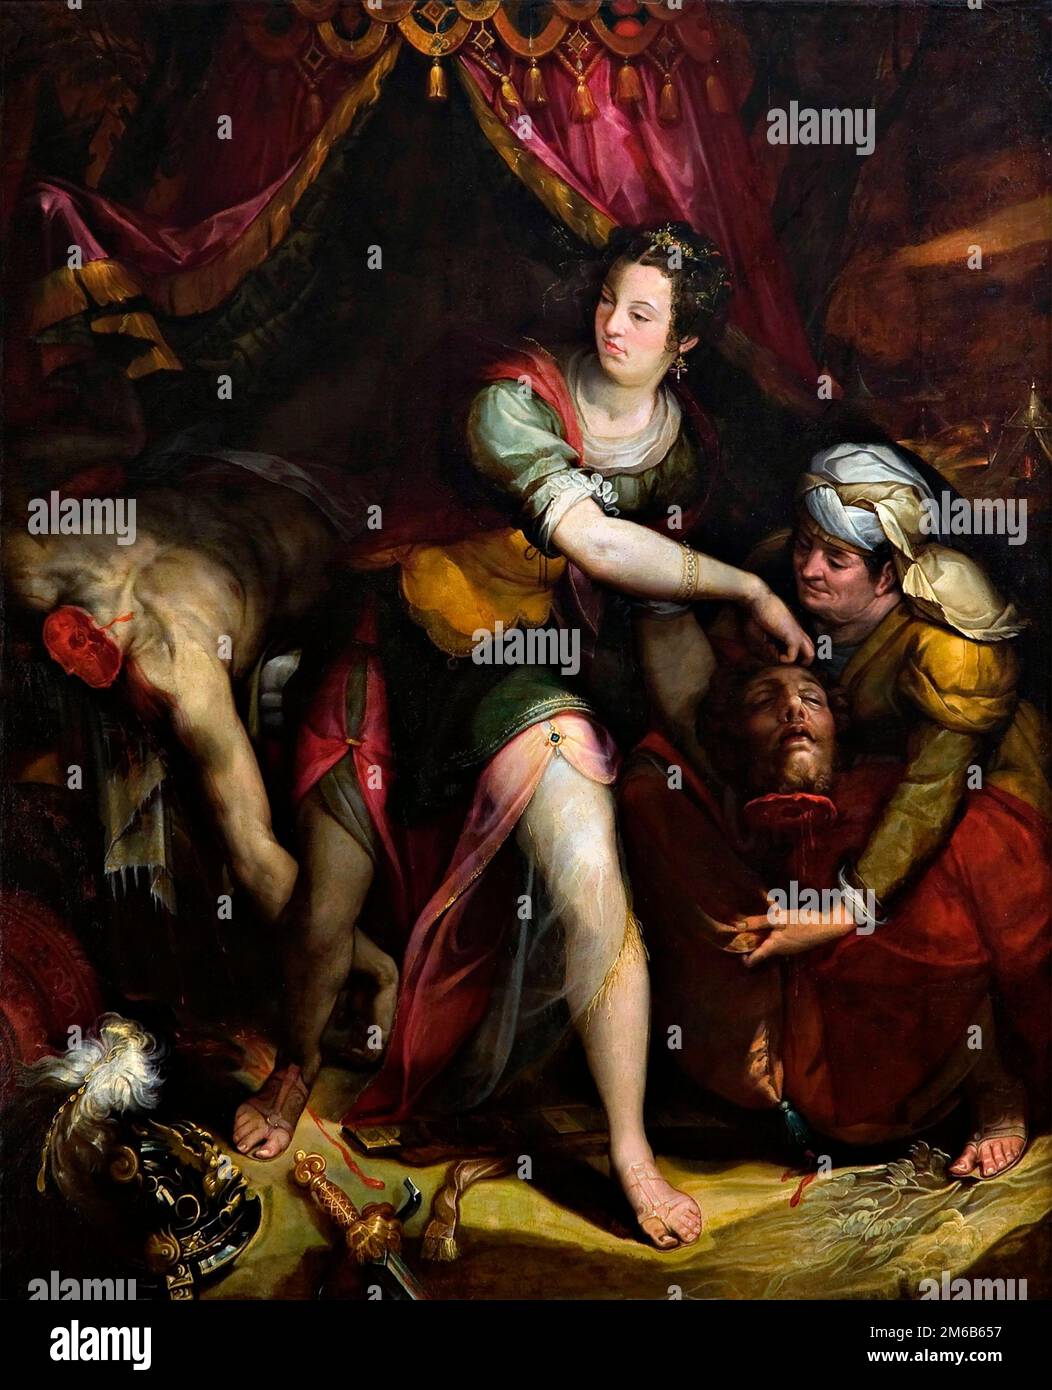 Lavinia Fontana. Judith et Holofernes par le peintre manneriste bolognaise, Lavinia Fontana (1552-1614), fin 1500s début 1600s Banque D'Images